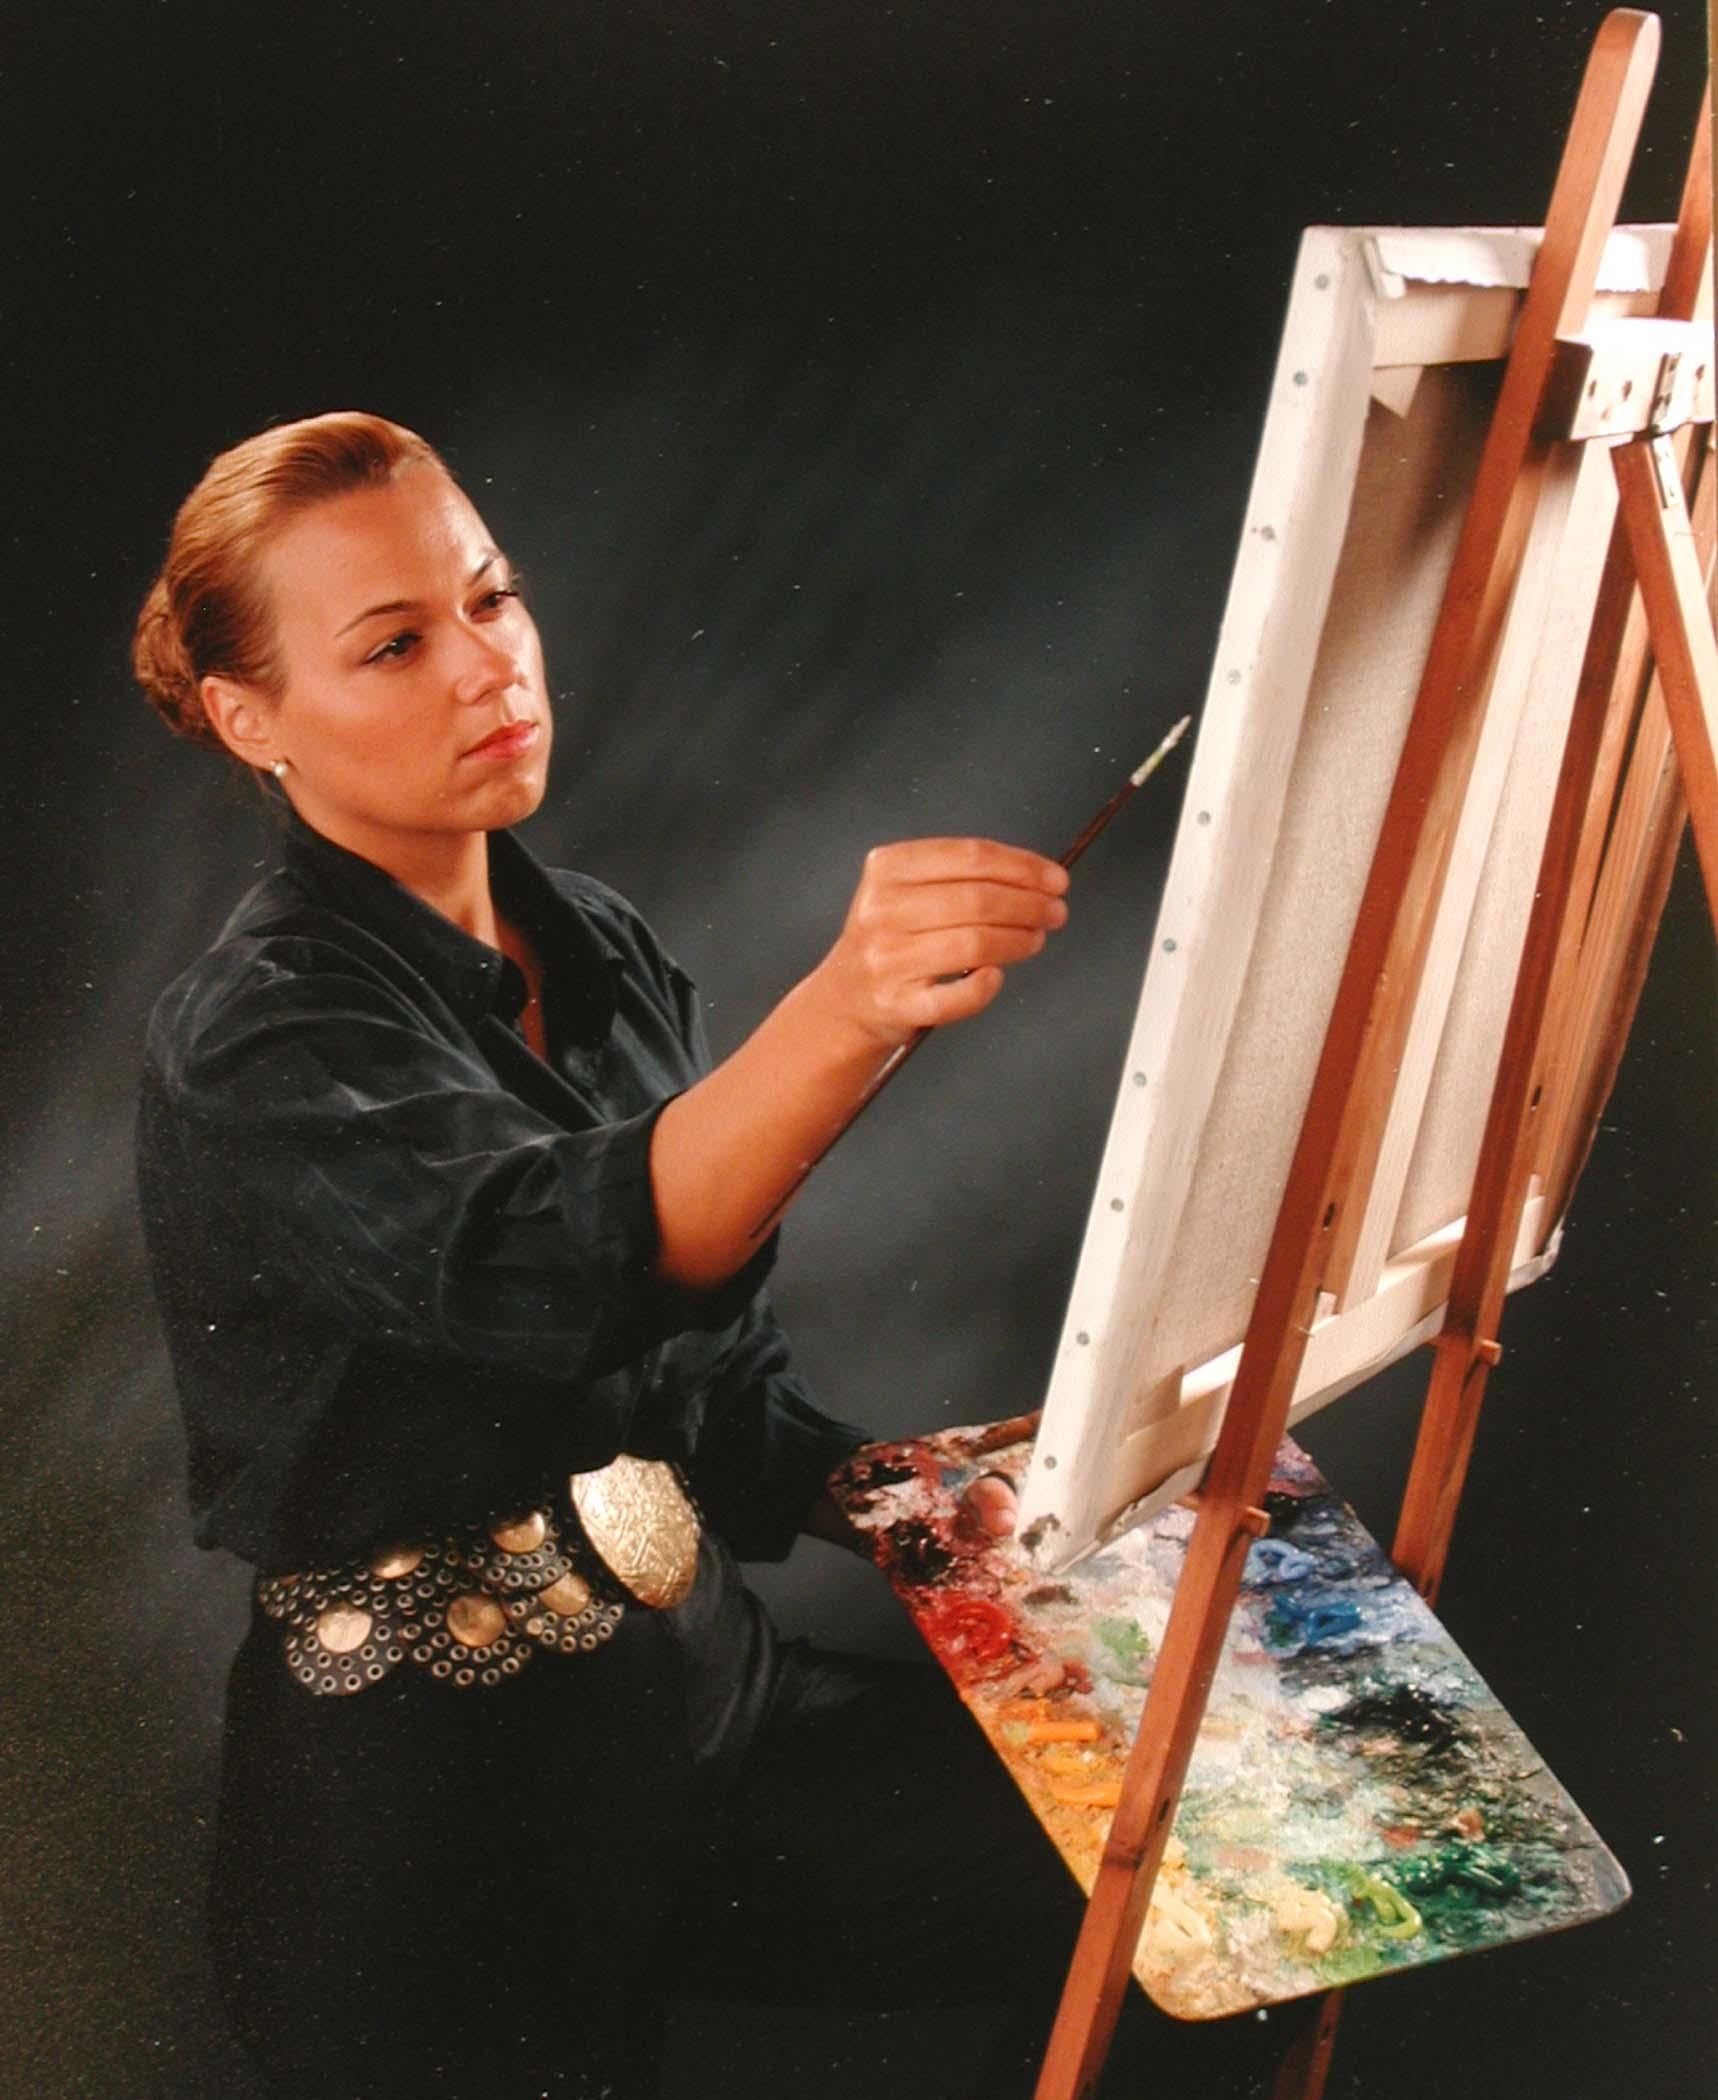 L'art rencontre quelque chose mais nous ne sommes pas tout à fait sûrs de ce que c'est par Lélia Pissarro (b. 1963)
Acrylique, feuille d'or et résine sur toile
130 x 97.4 cm (38 ³/₈ x 51 ¹/₈ pouces)
Signé et titré au dos

Littérature
Lélia Pissarro,